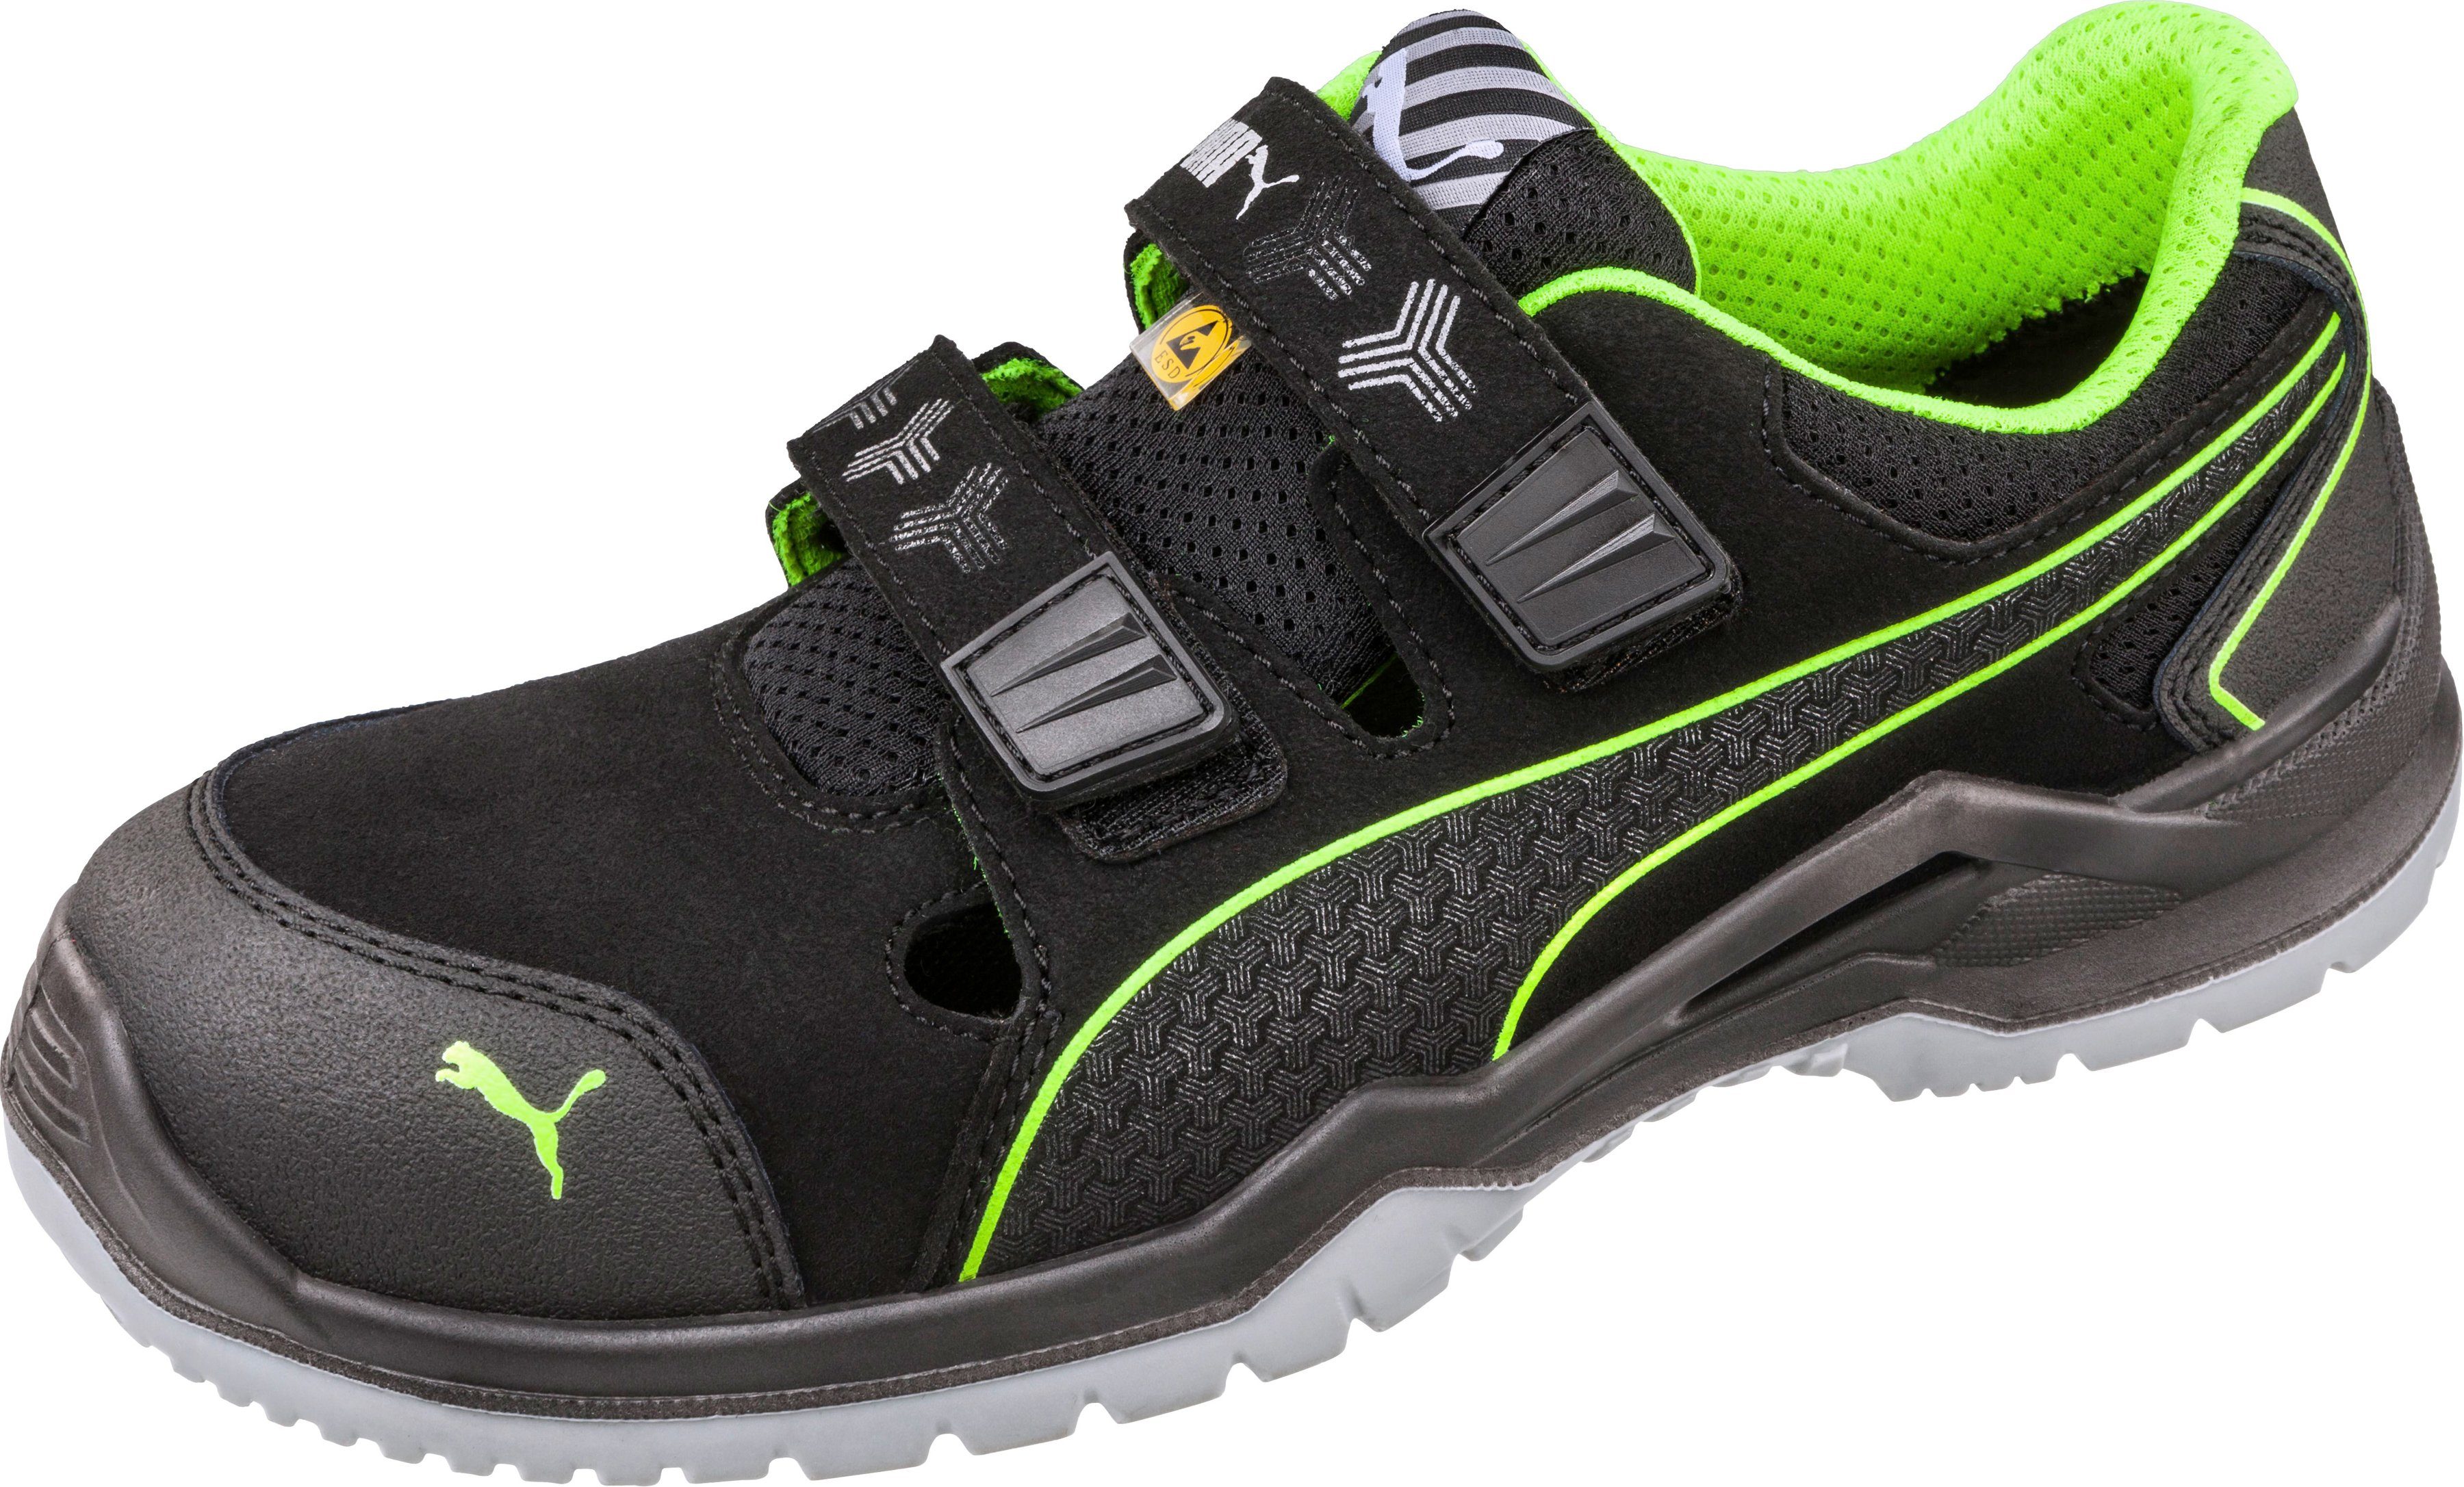 PUMA Safety »Neodyme« Sicherheitsschuh Sandale, Sicherheitsklasse S1P  online kaufen | OTTO